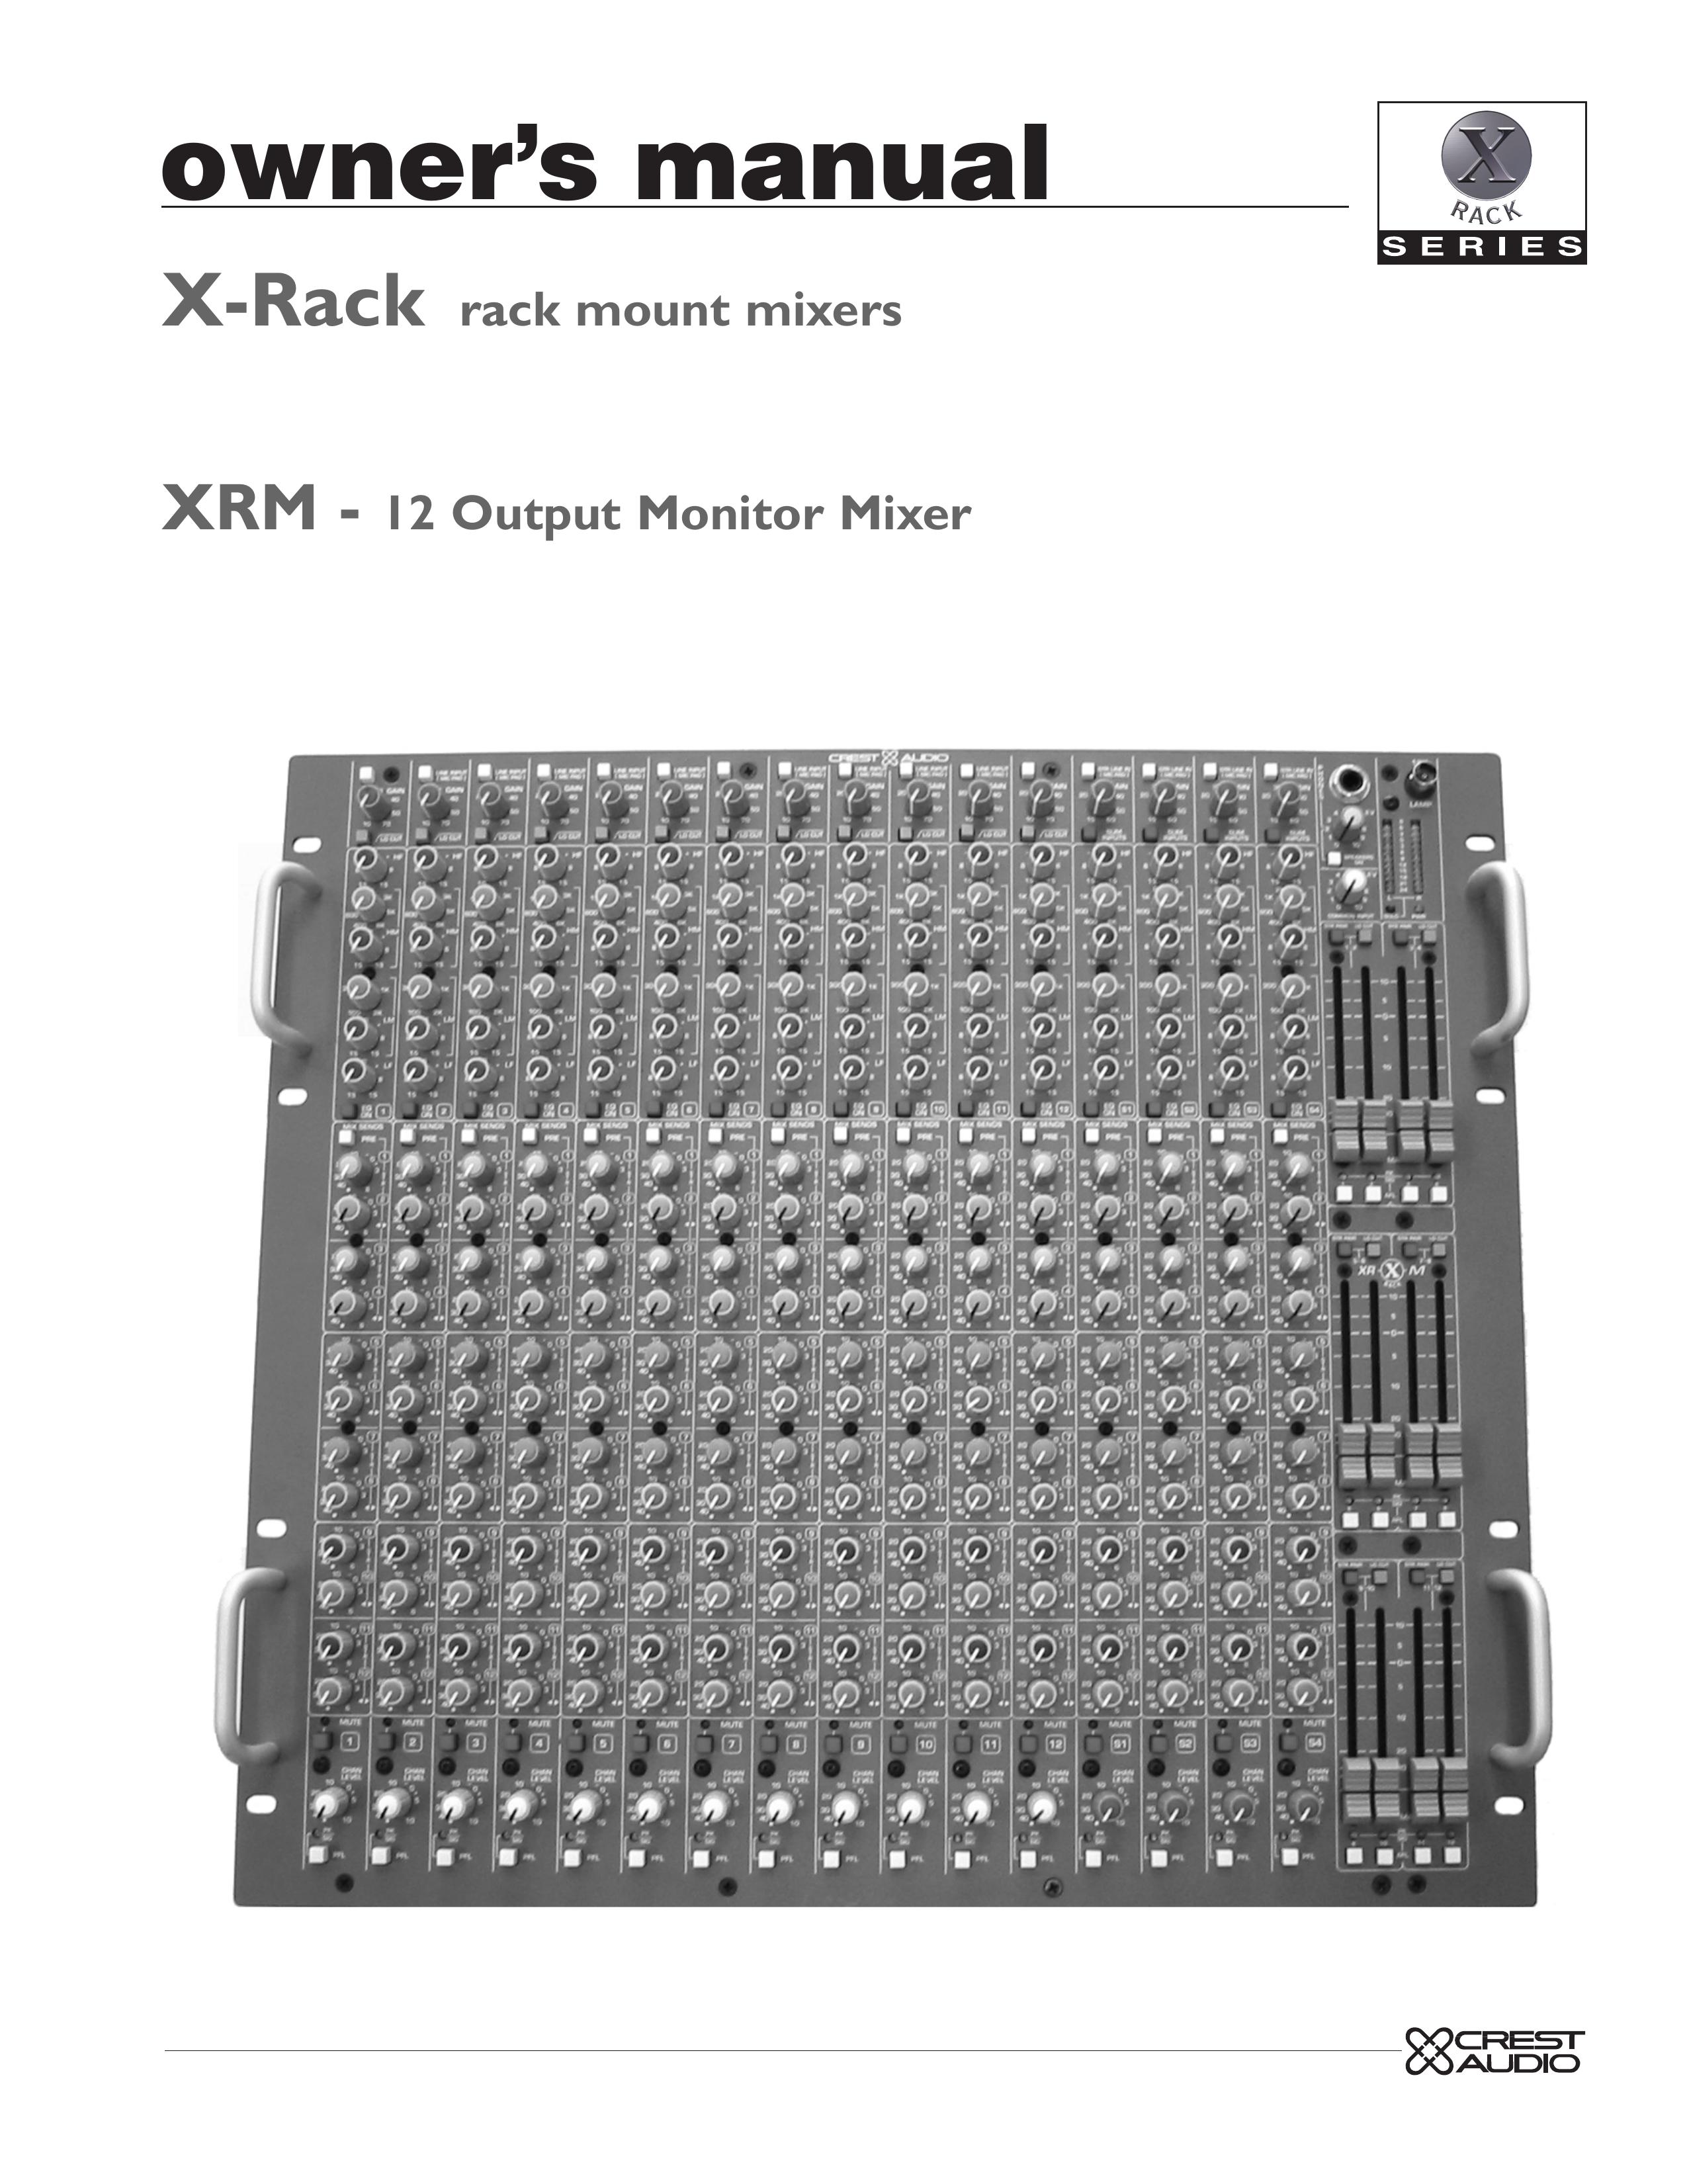 Crest Audio XRM - 12 Music Mixer User Manual